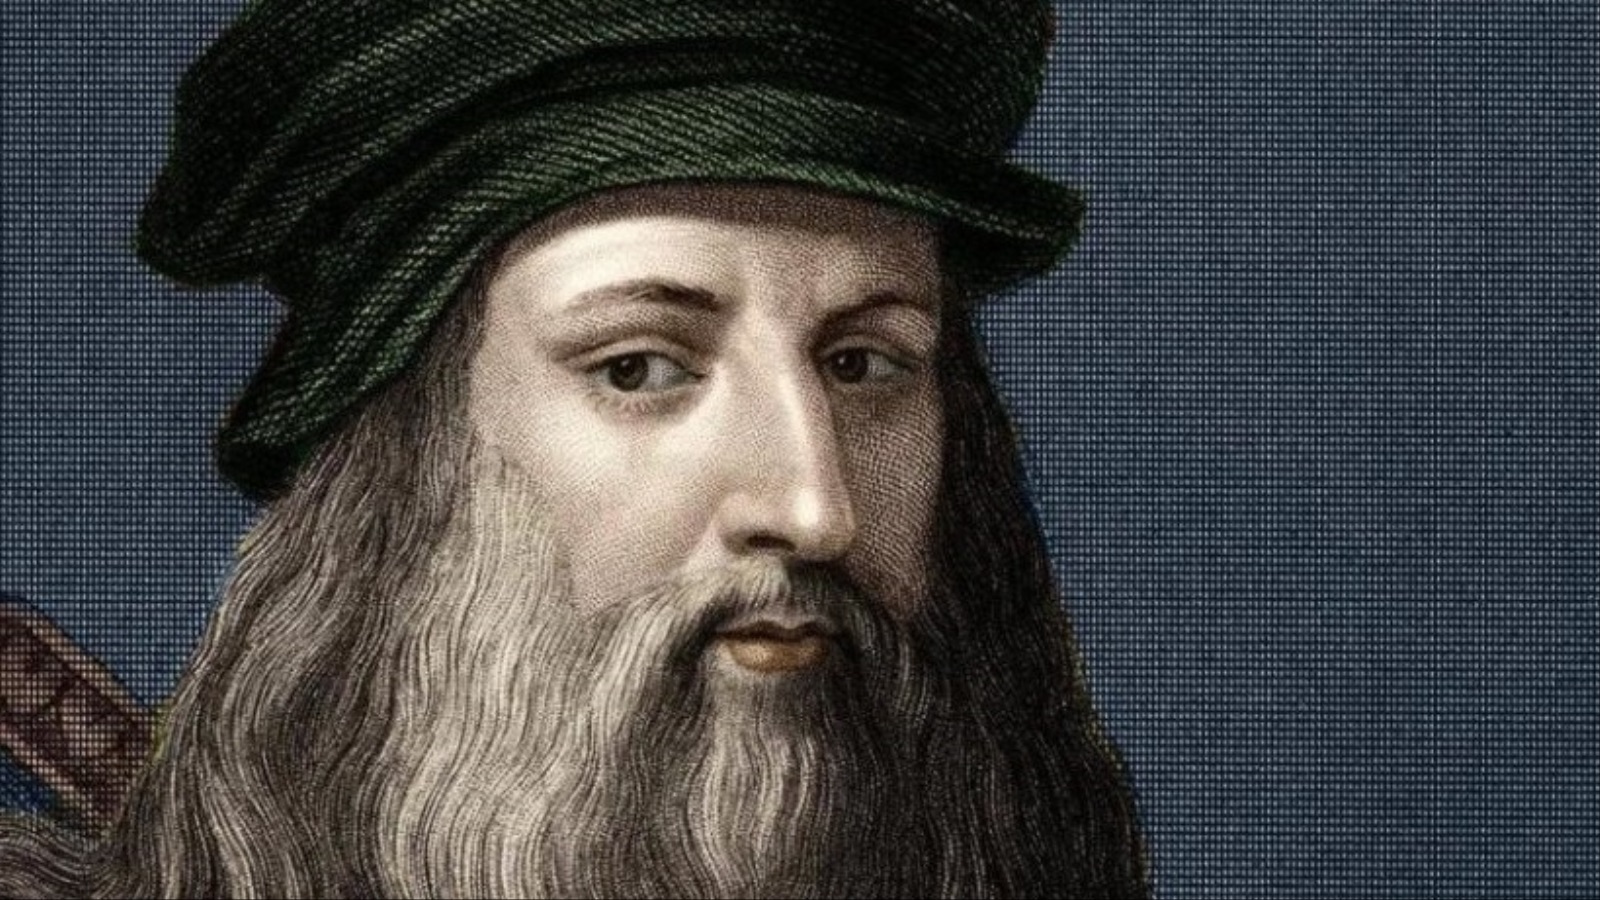  ليوناردو دافينشي صاحب لوحة الموناليزا(مواقع التواصل)